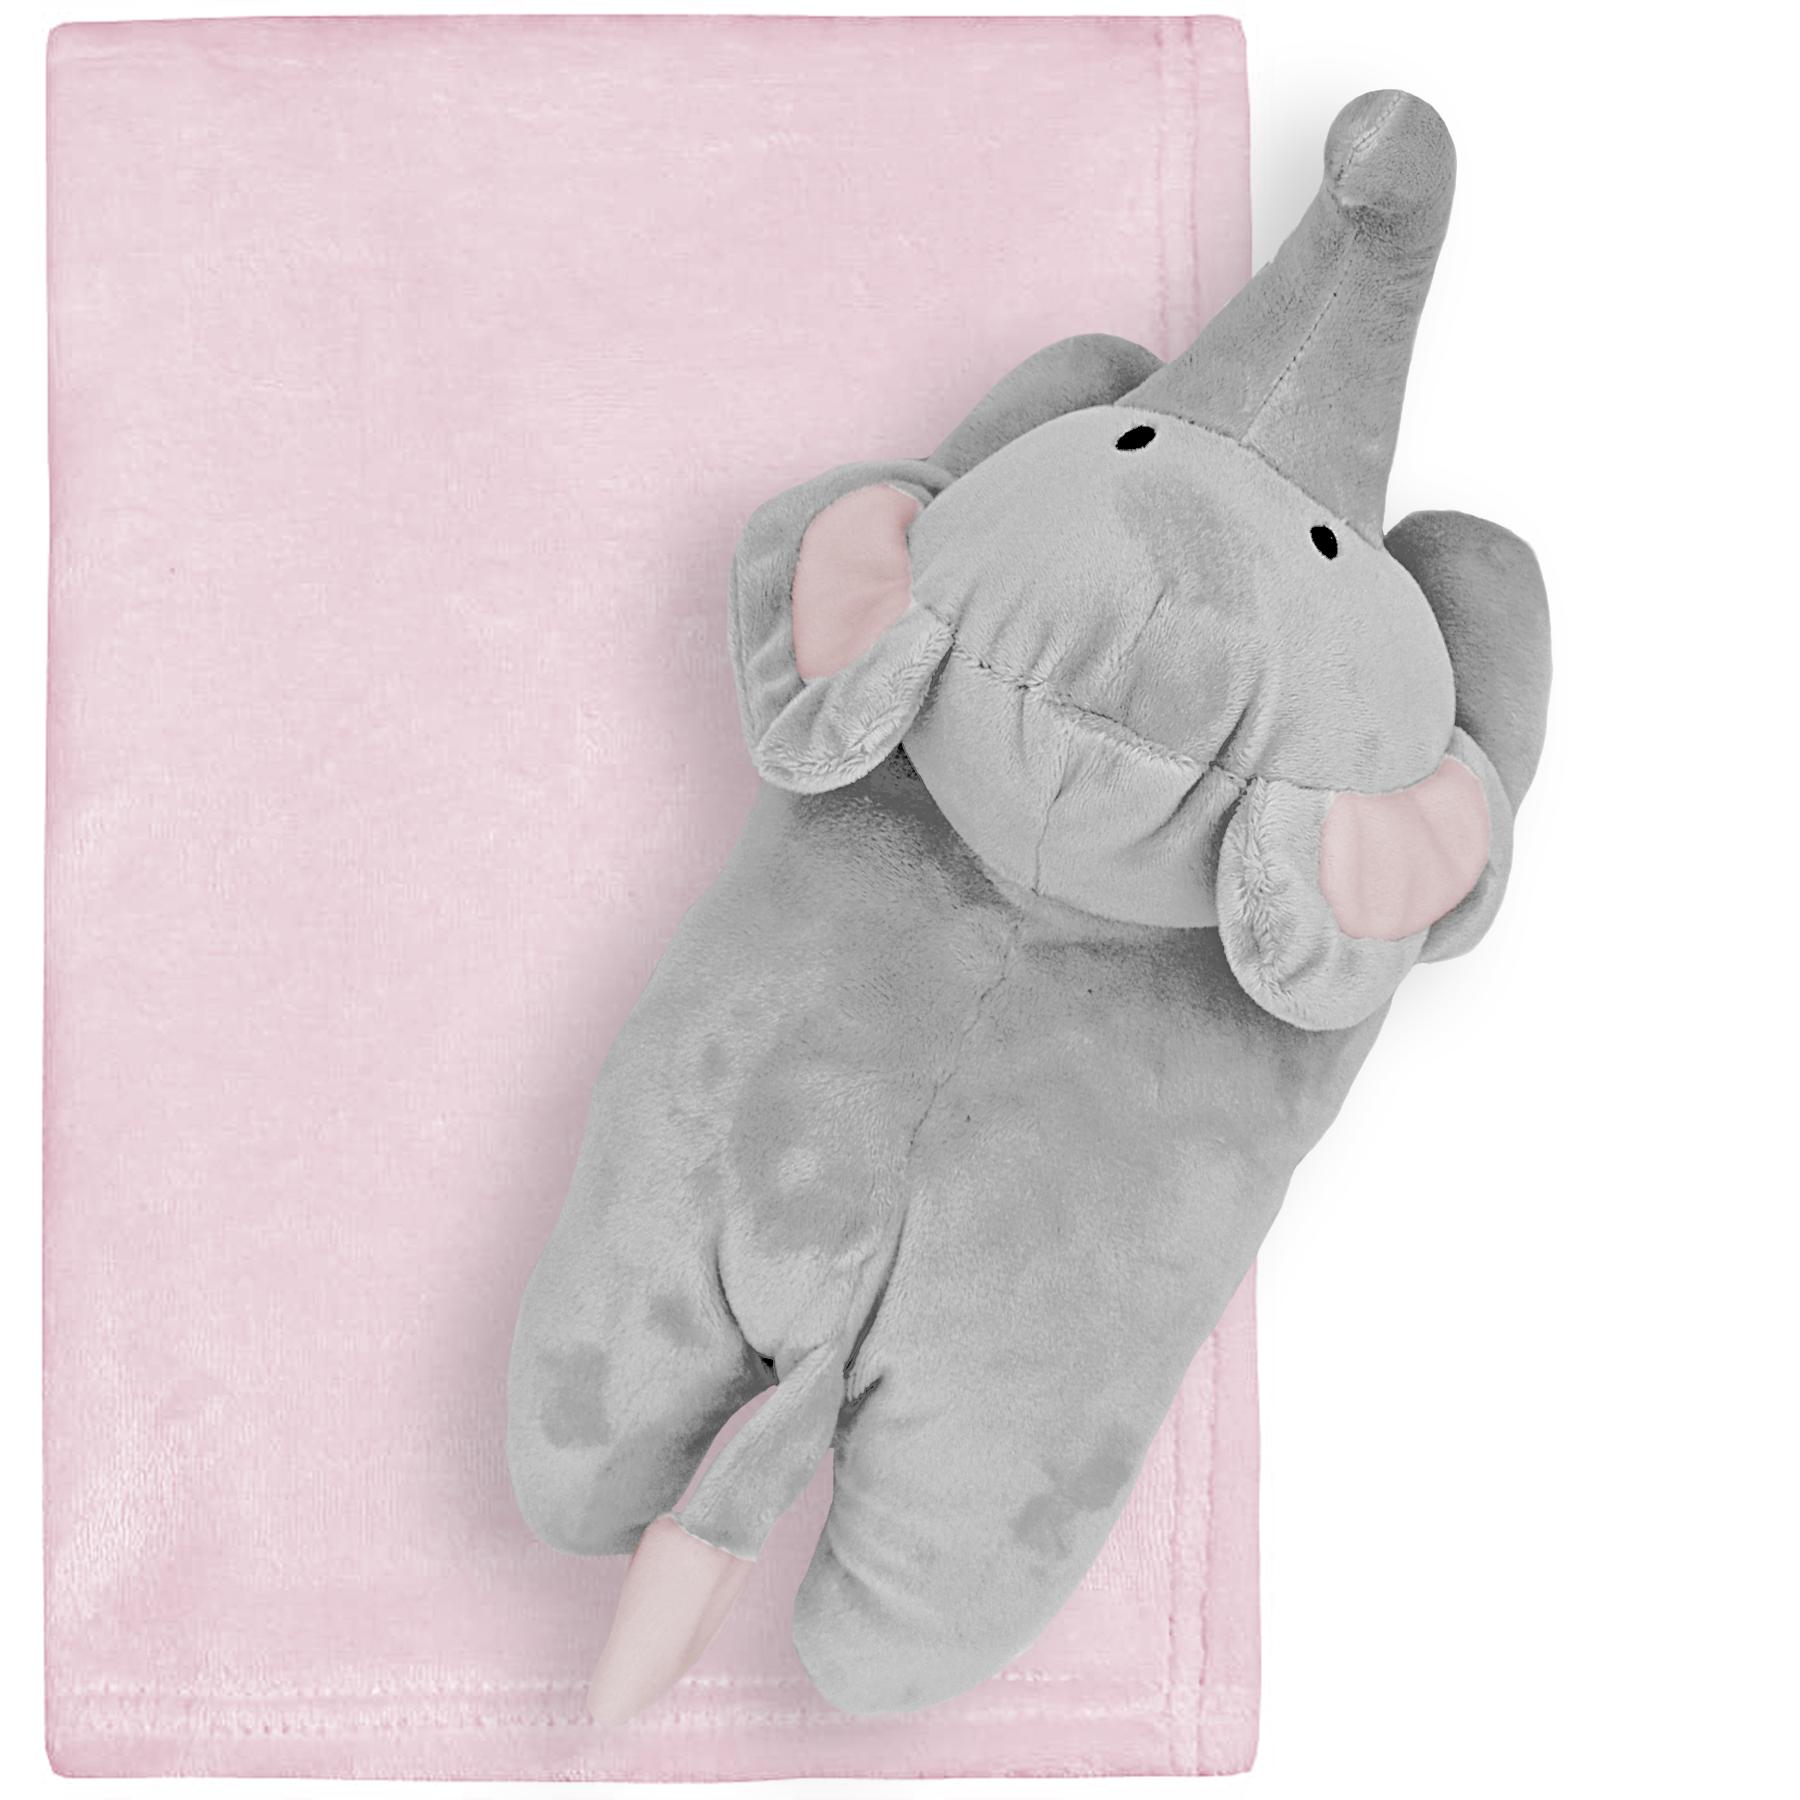 Babytown Elephant Toy